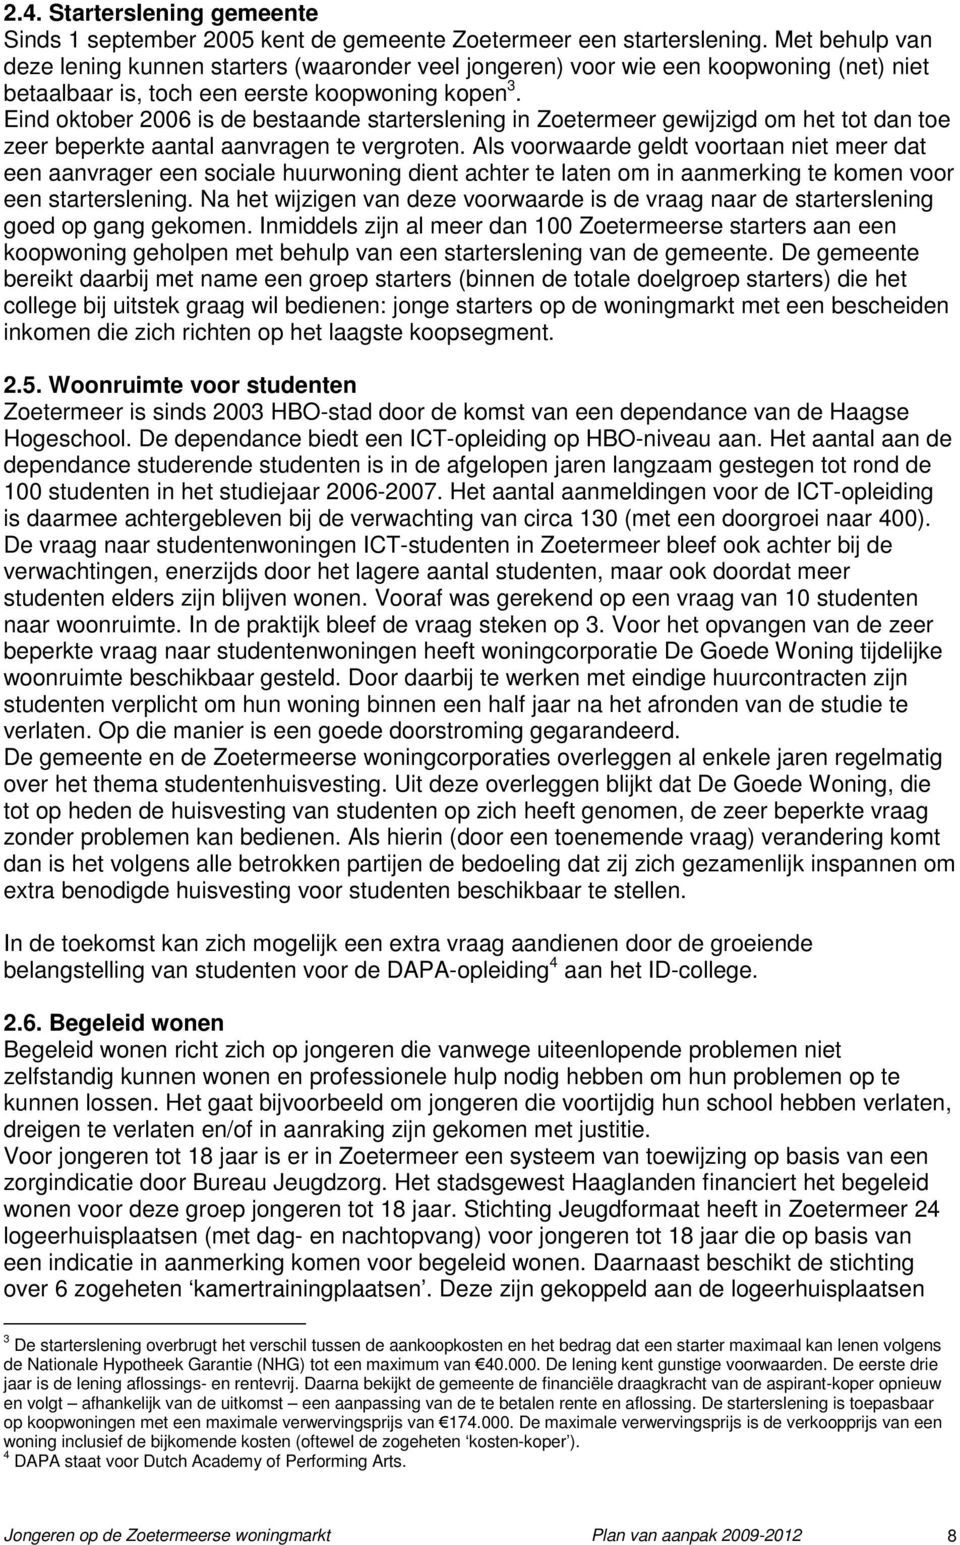 Eind oktober 2006 is de bestaande starterslening in Zoetermeer gewijzigd om het tot dan toe zeer beperkte aantal aanvragen te vergroten.